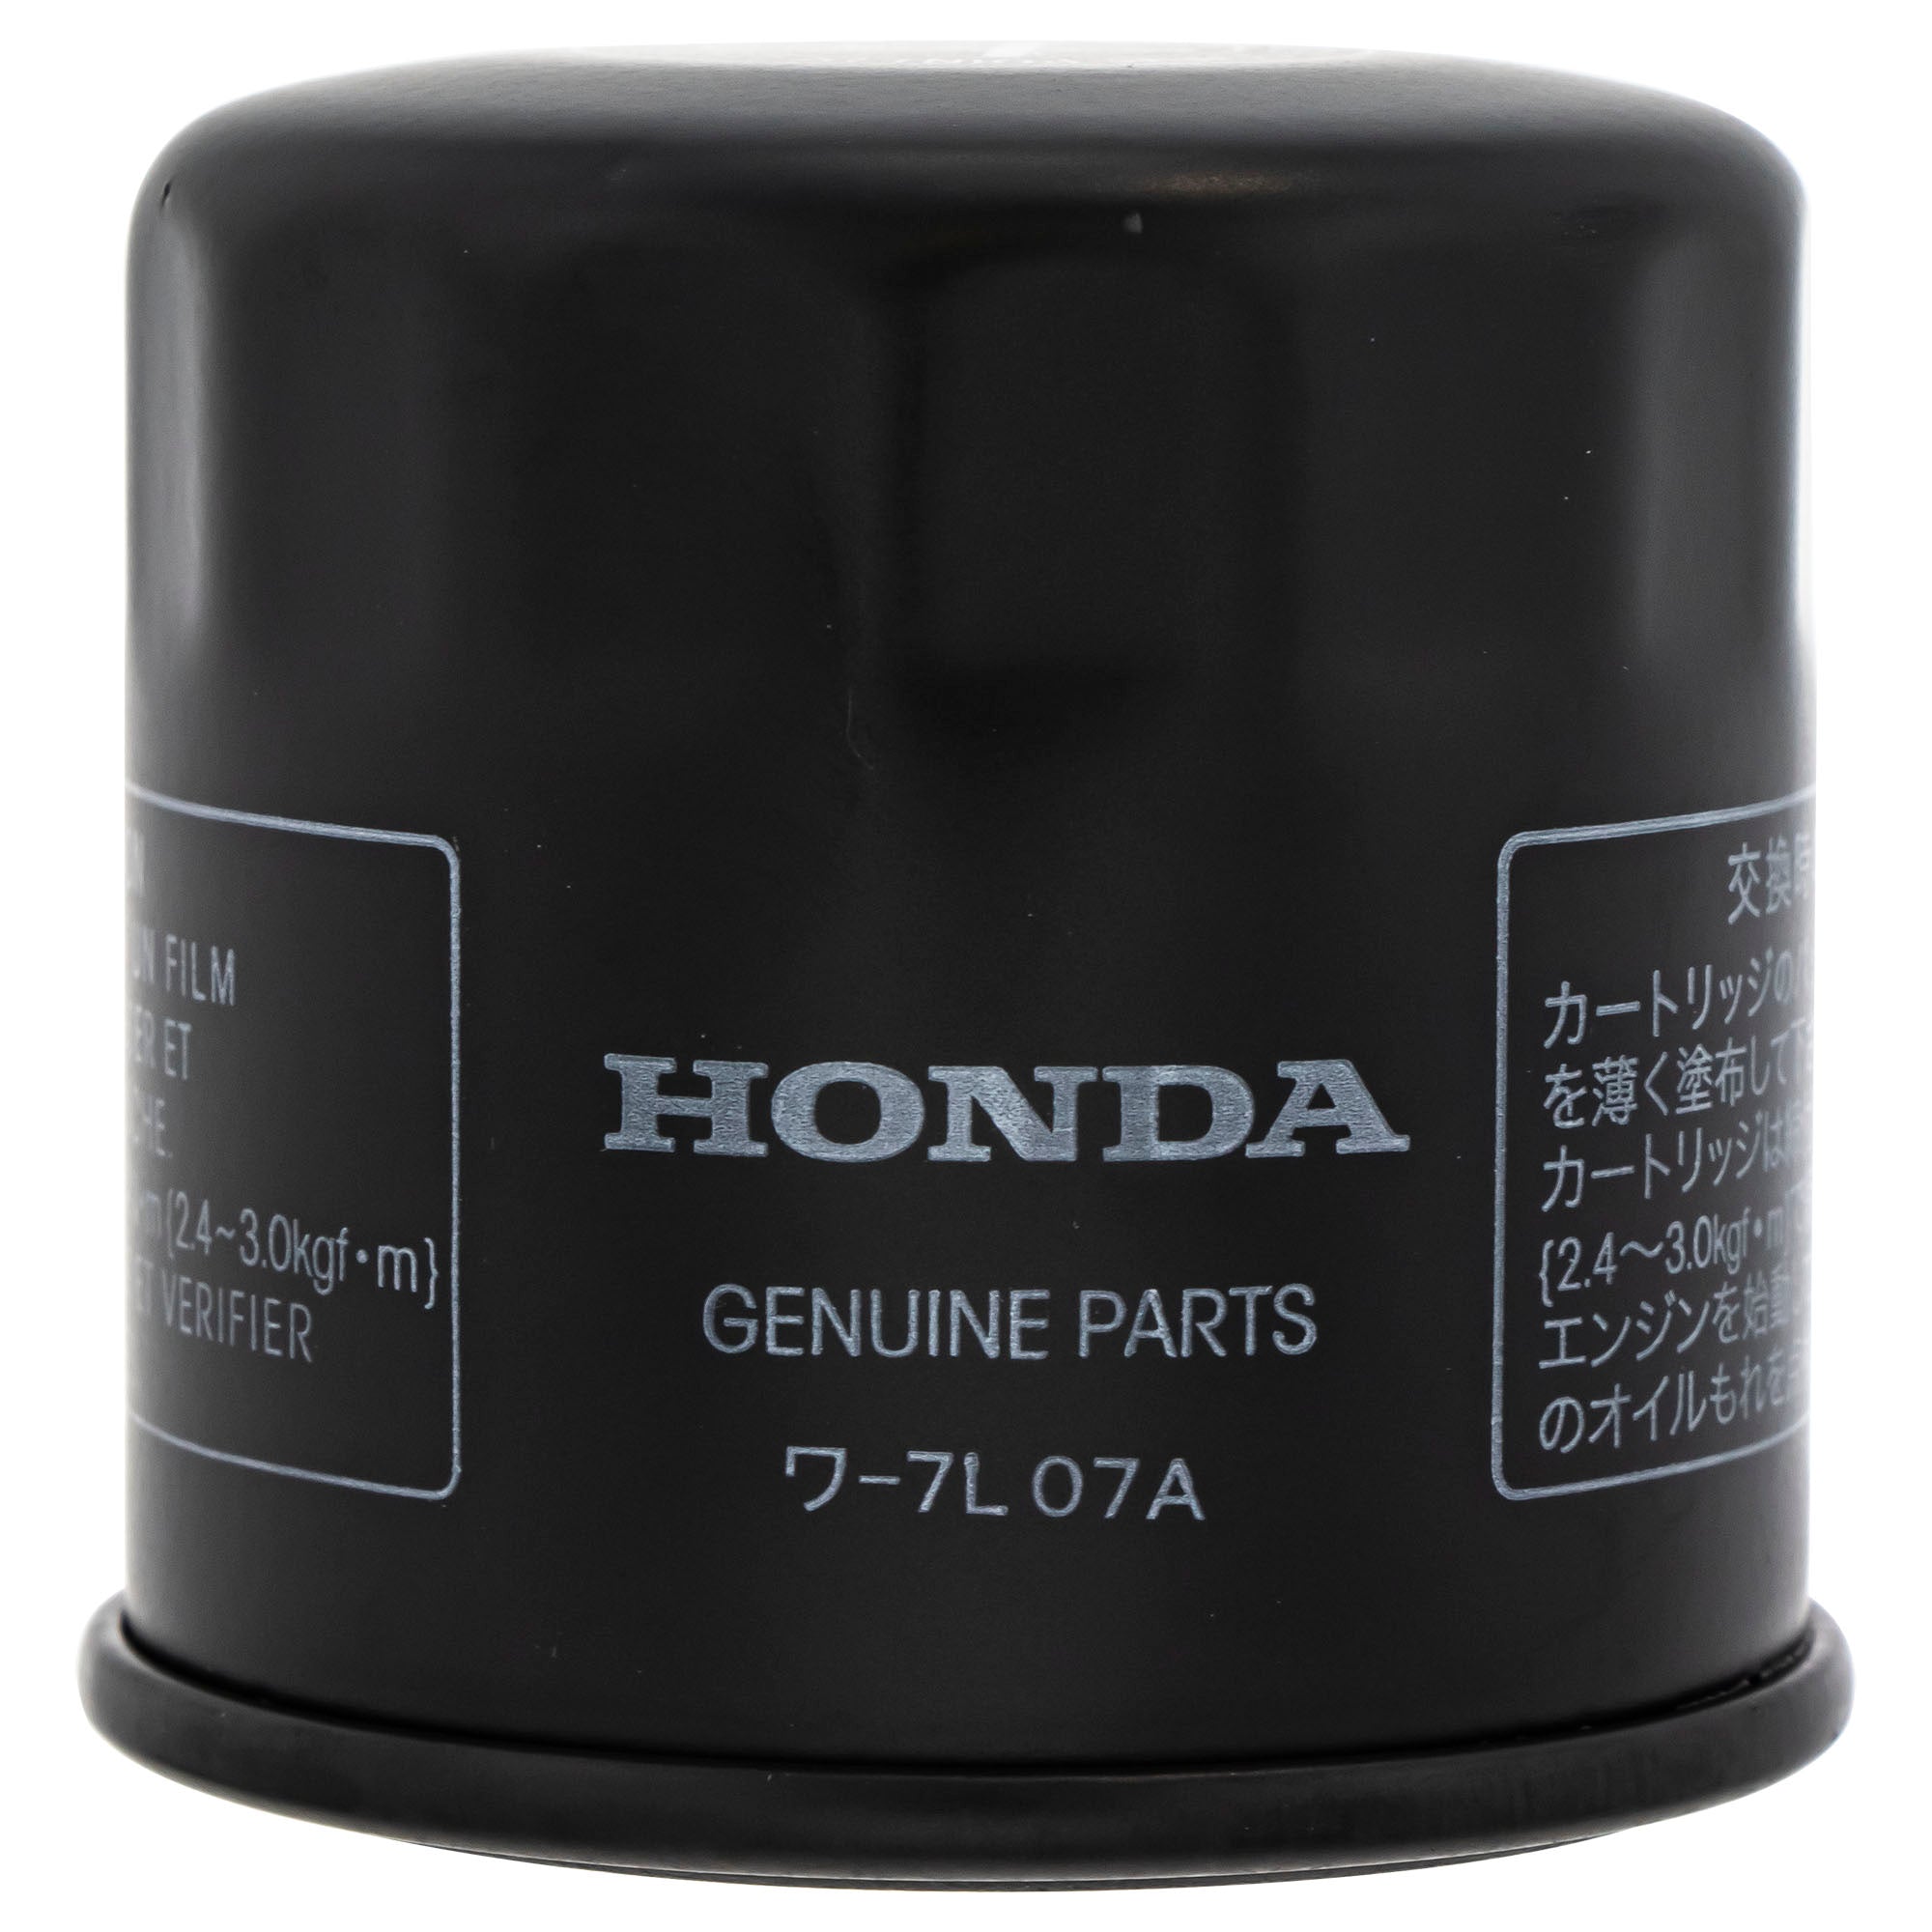 Honda FKOCK10668 OEM GN4 Oil Change Kit for 2006-2019 CBR1000RR